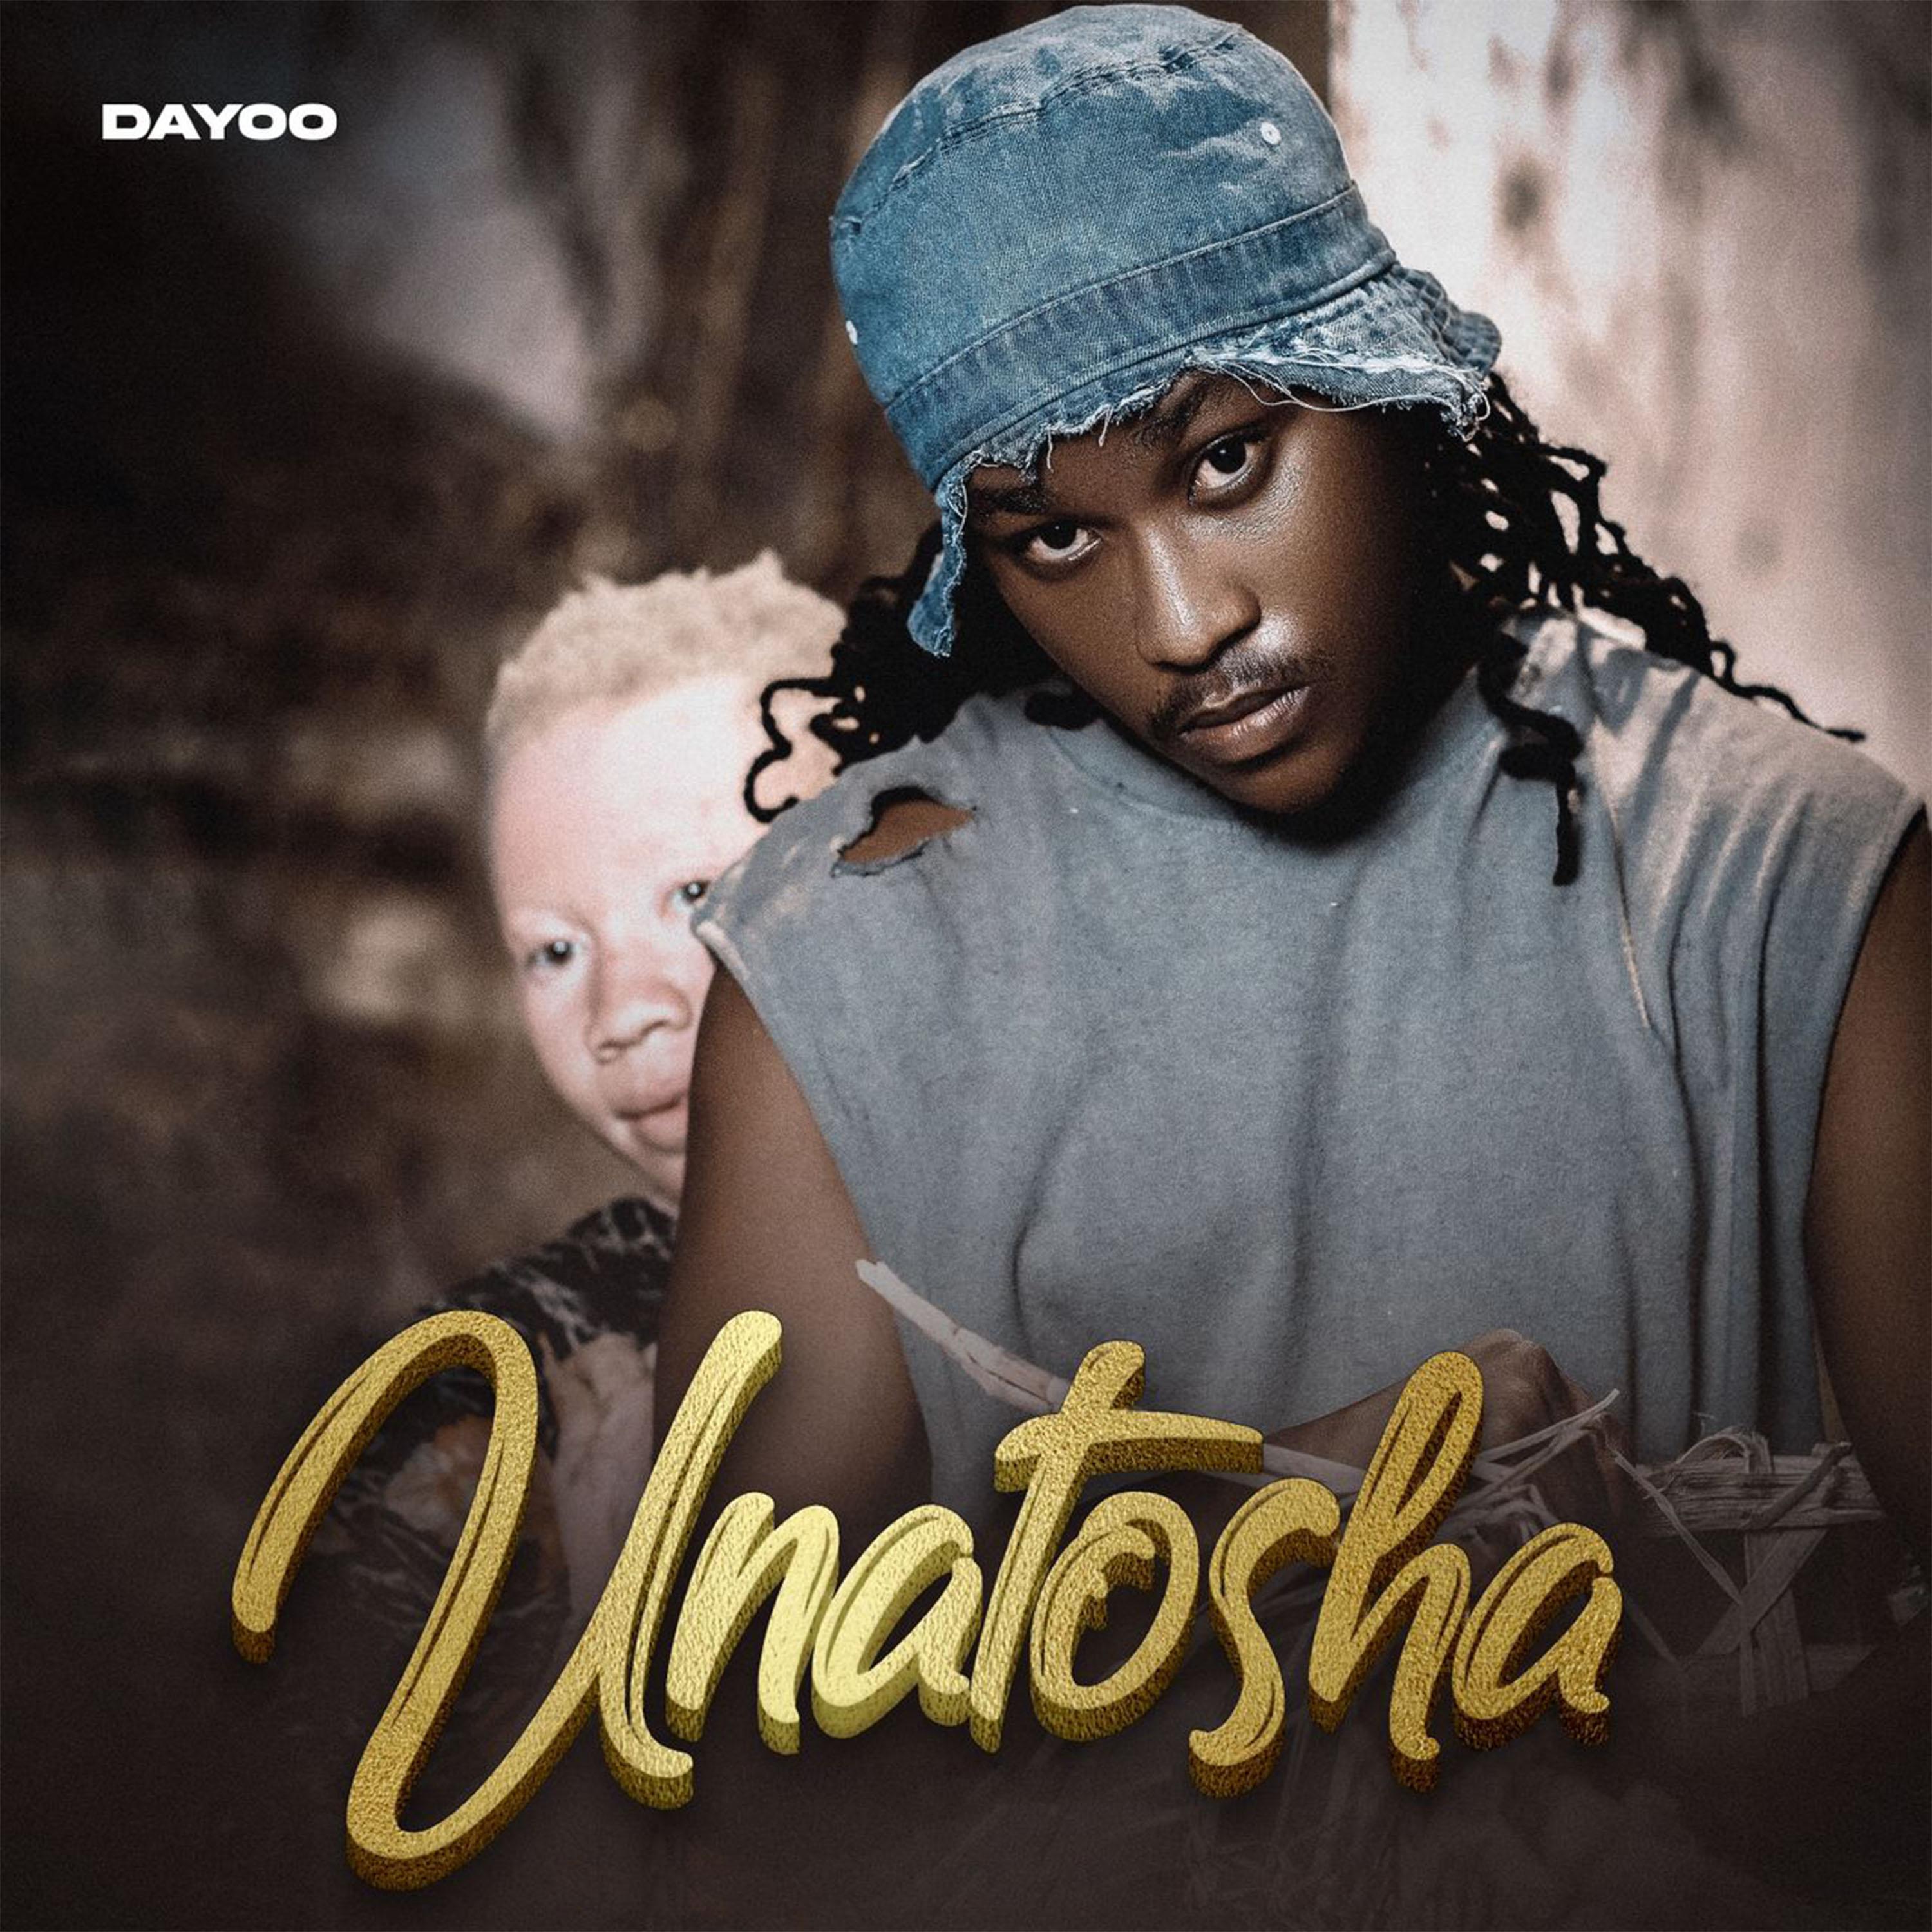 Dayoo - Unatosha